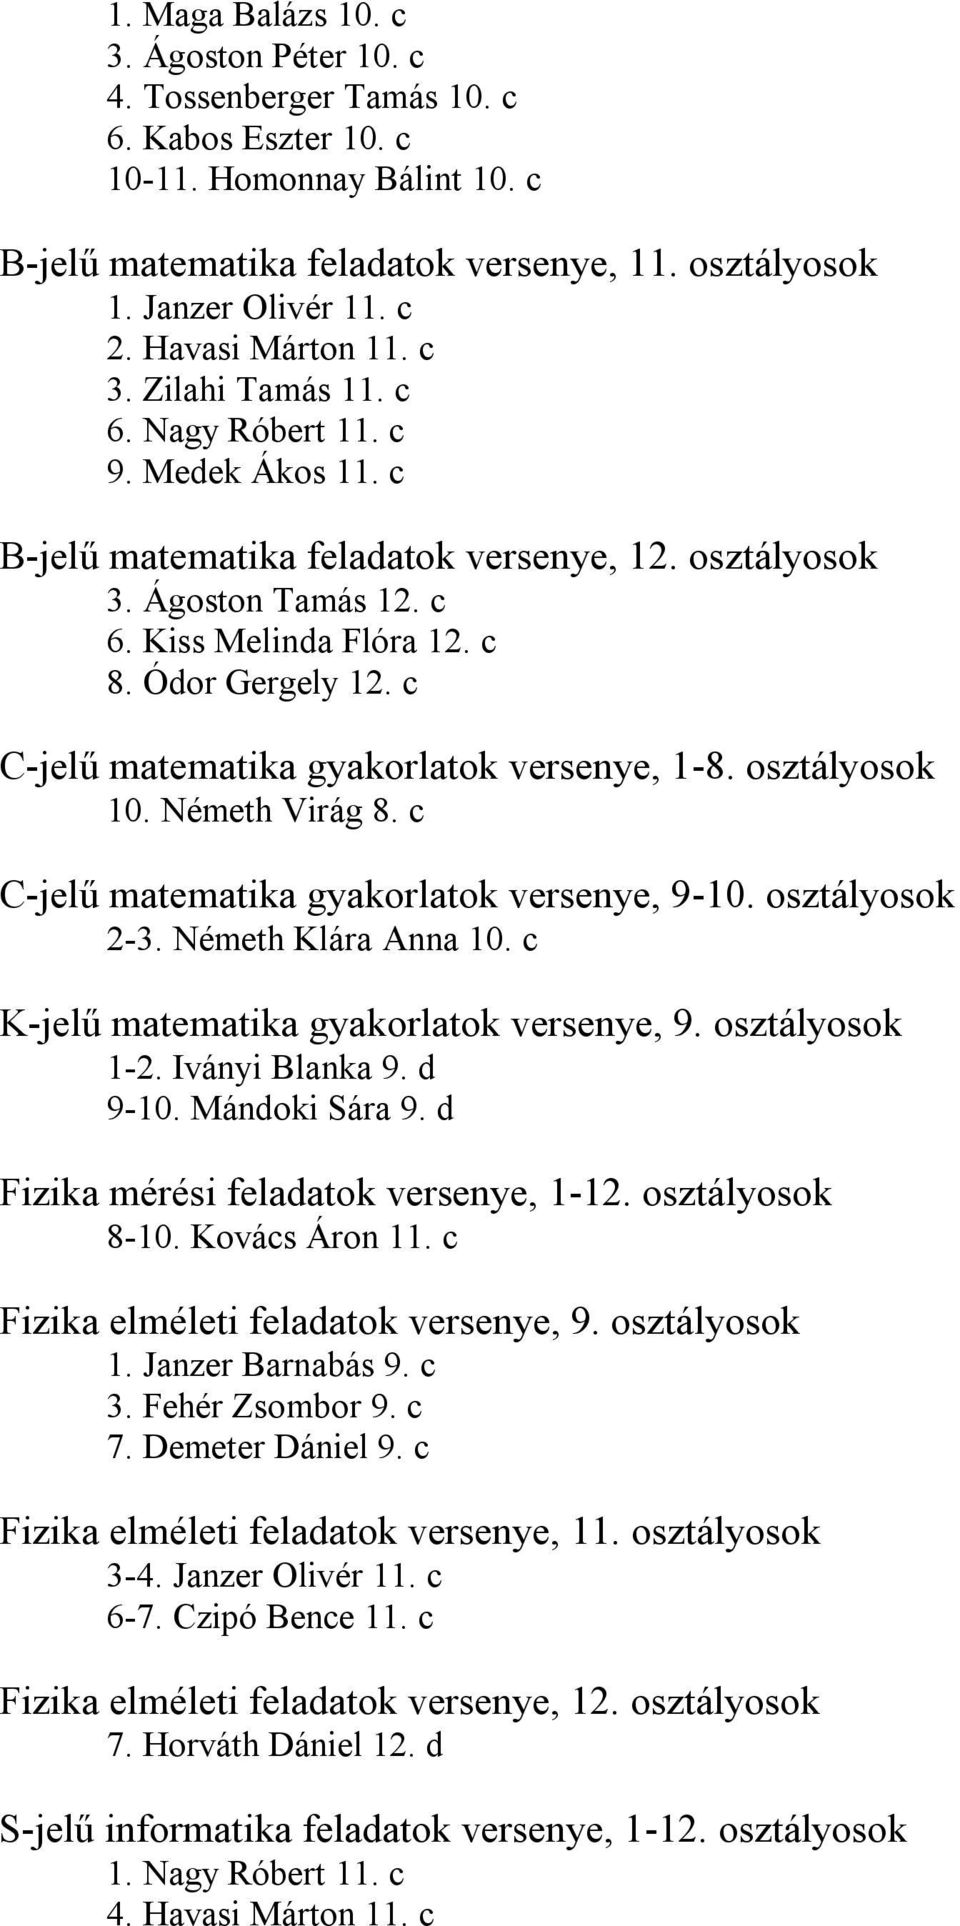 Ódor Gergely 12. c C-jelű matematika gyakorlatok versenye, 1-8. osztályosok 10. Németh Virág 8. c C-jelű matematika gyakorlatok versenye, 9-10. osztályosok 2-3. Németh Klára Anna 10.